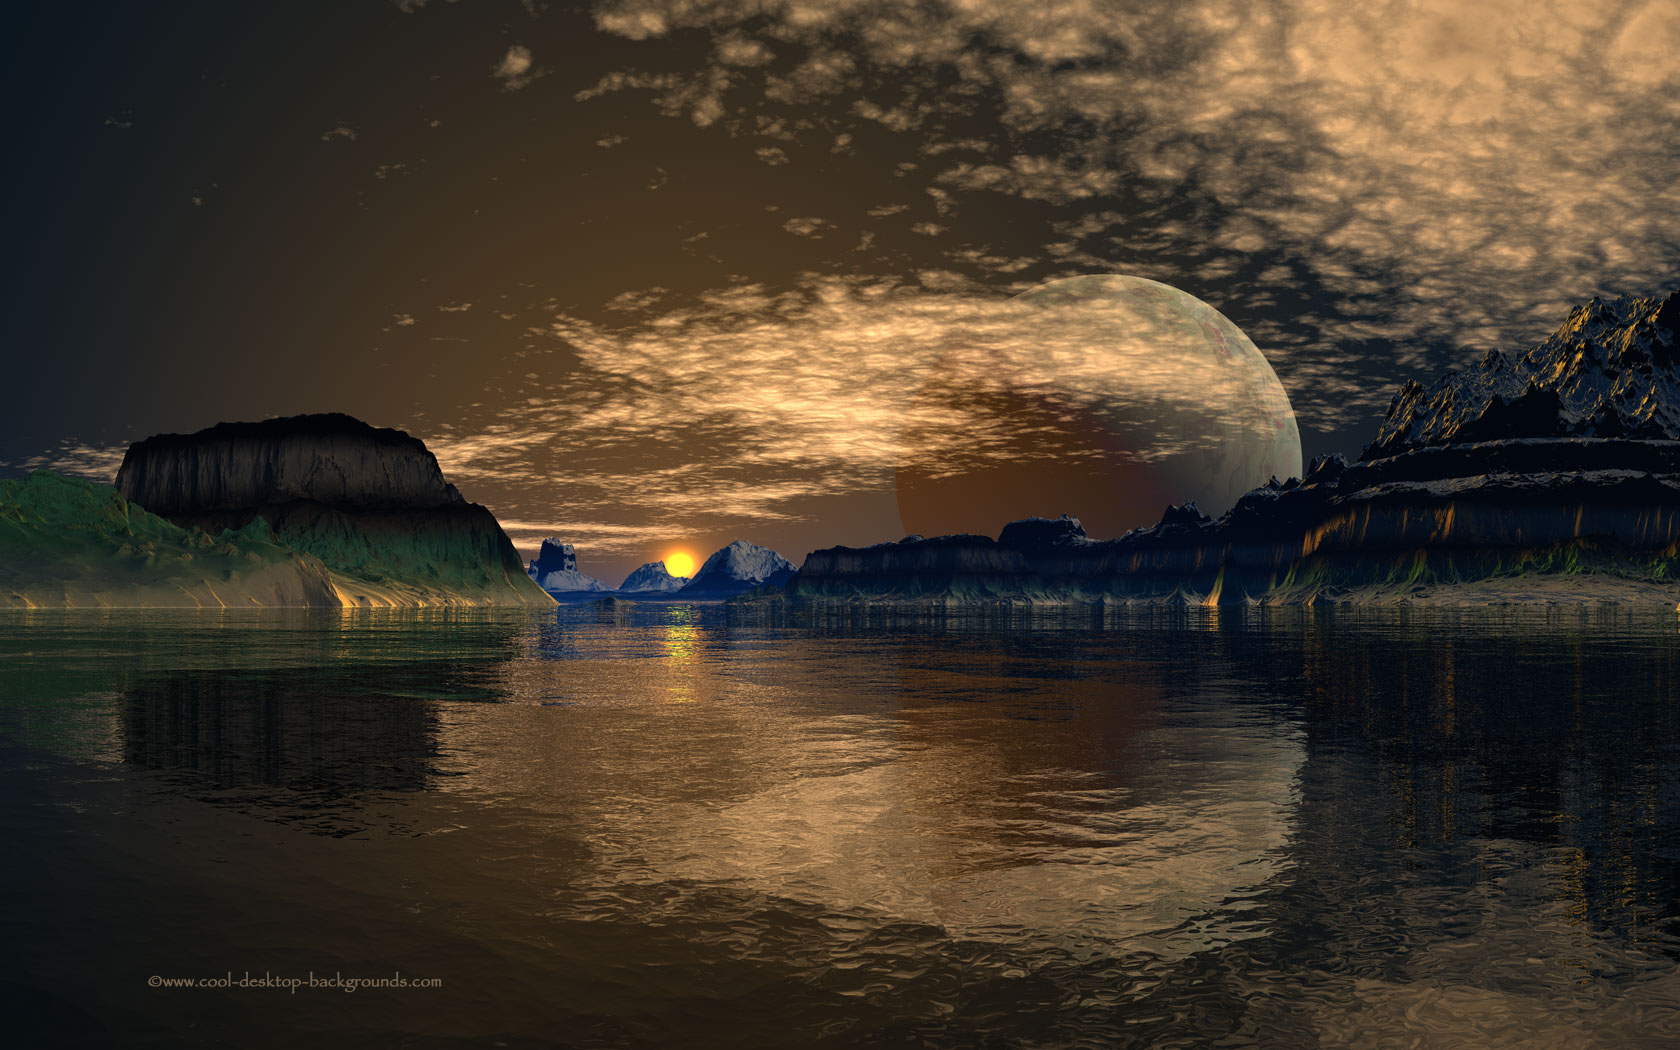 Big Moon Lake - Landscape Desktop Background - 1680x1050 pixels